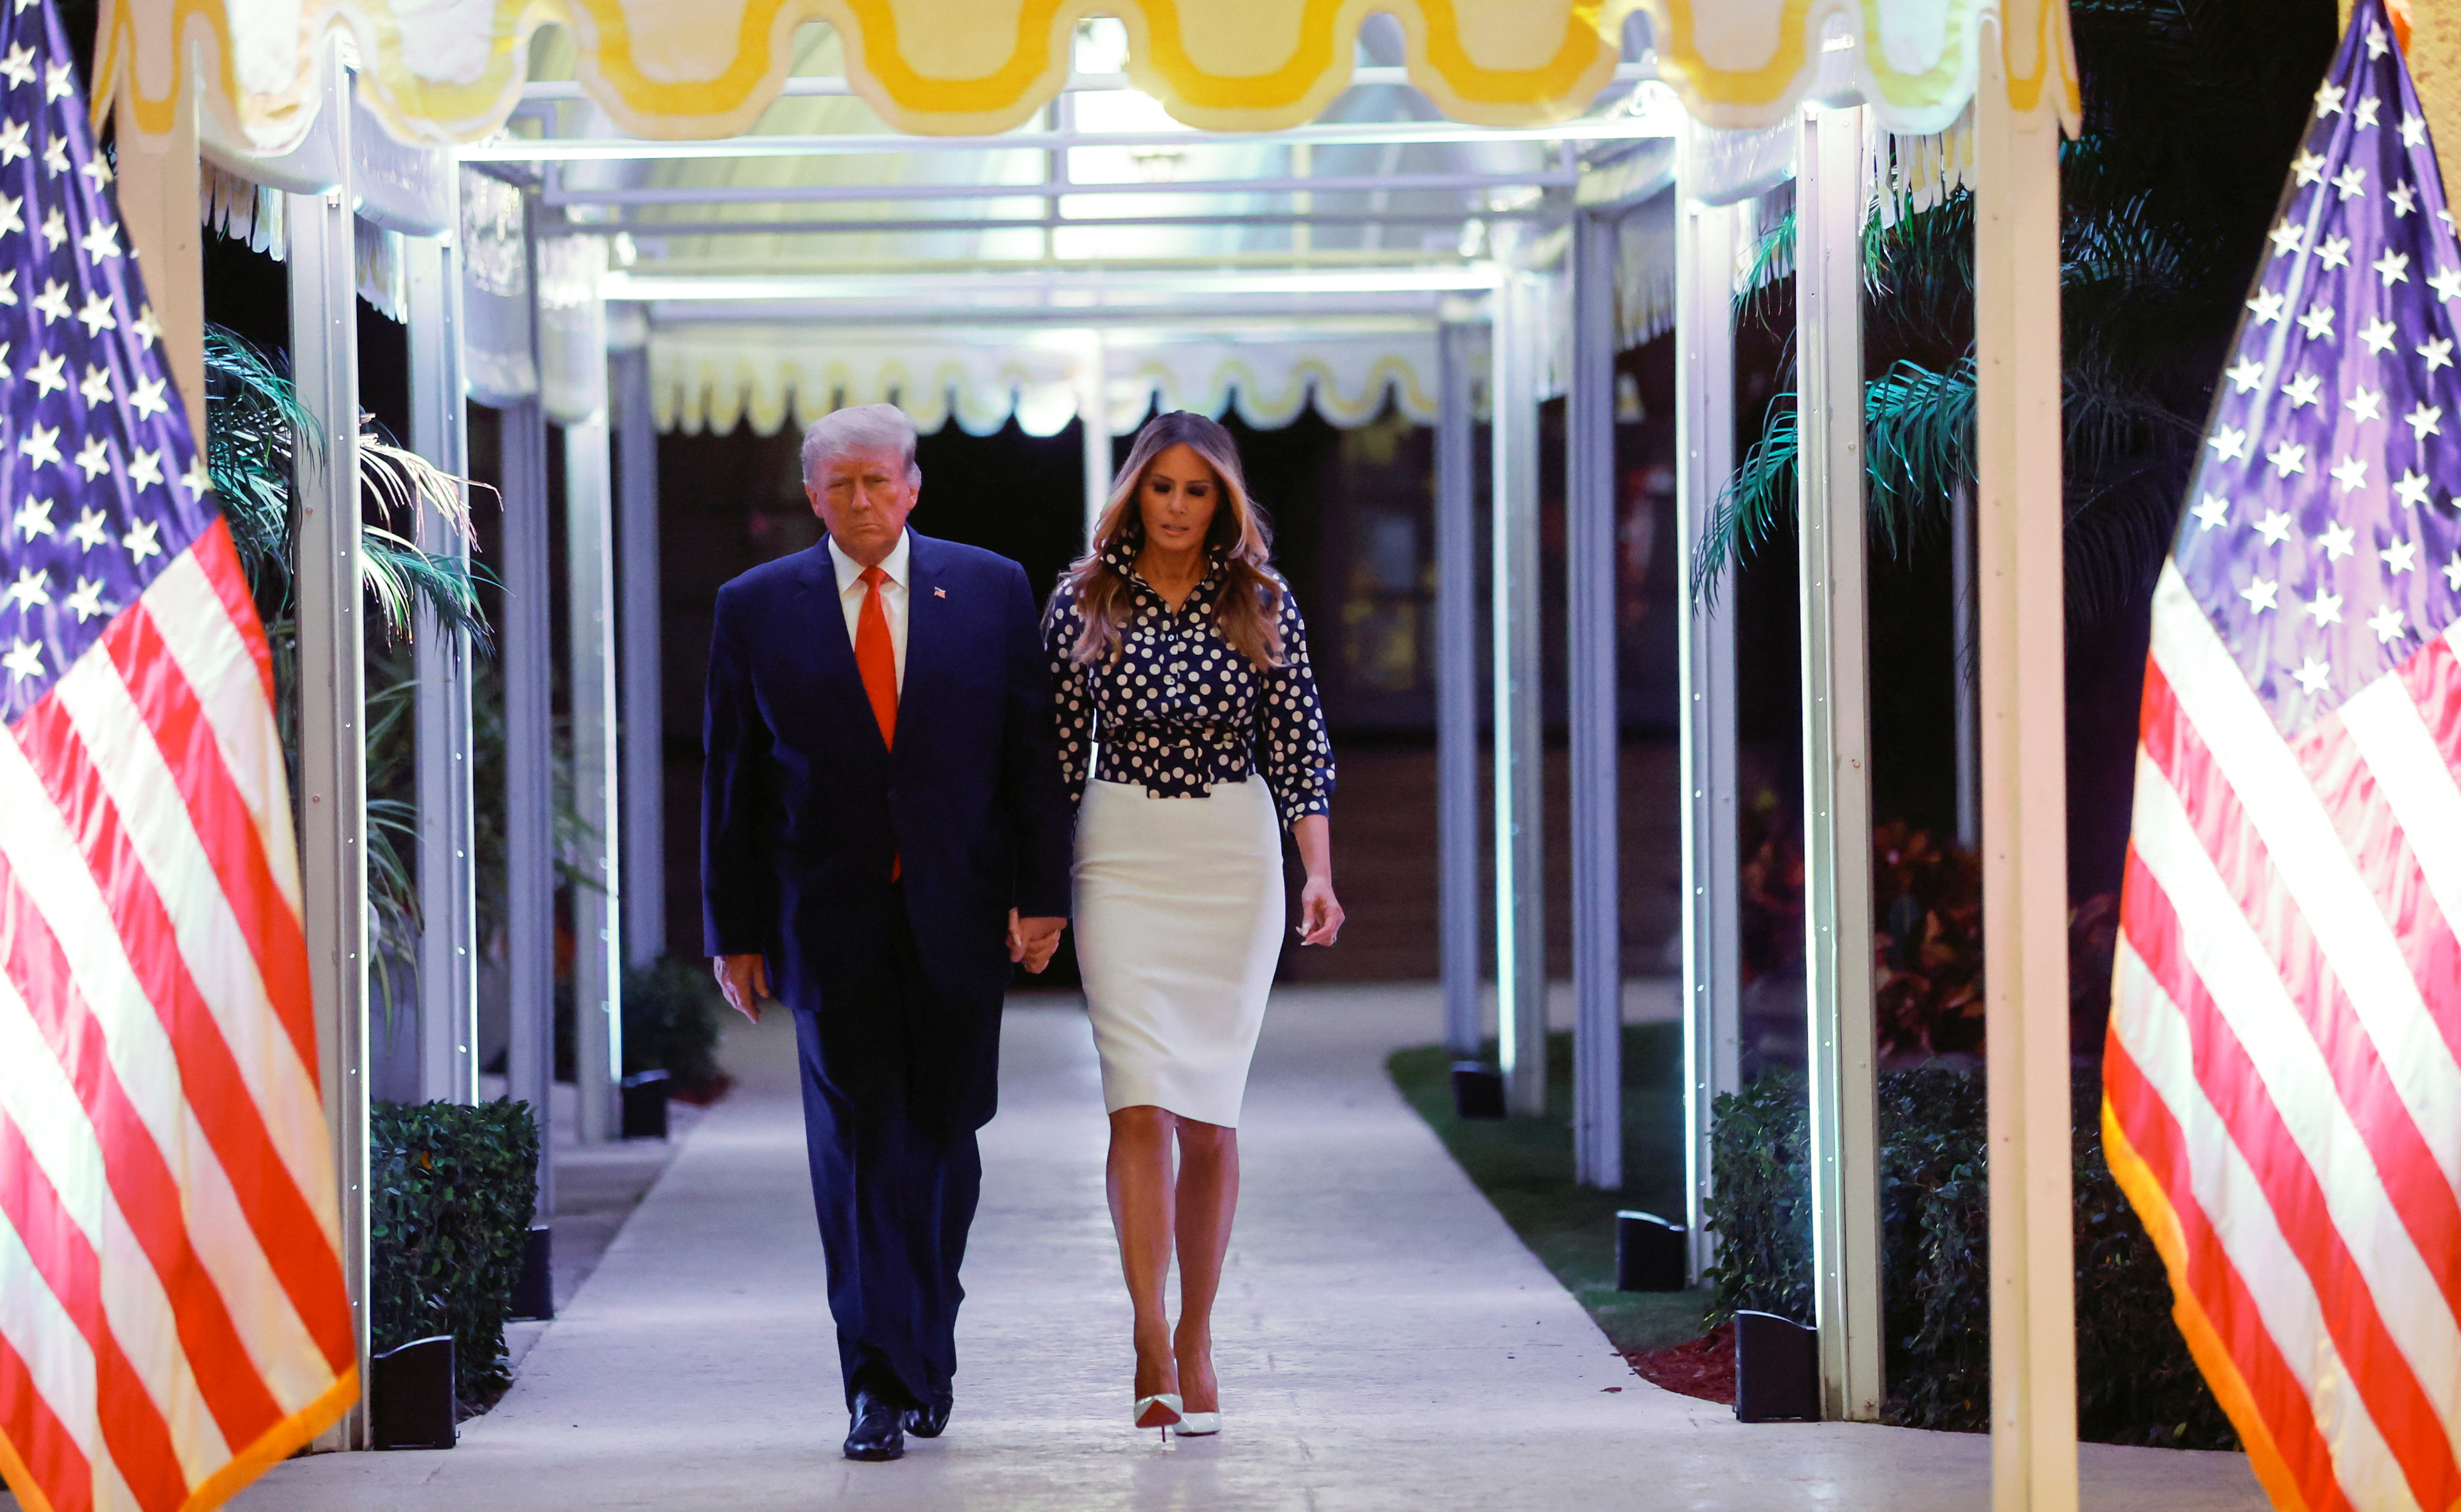 El ex presidente de Estados Unidos, Donald Trump, llegó con su esposa, Melania Trump, para anunciar que volverá a presentarse como candidato a la presidencia de Estados Unidos en las elecciones presidenciales de 2024. (REUTERS)